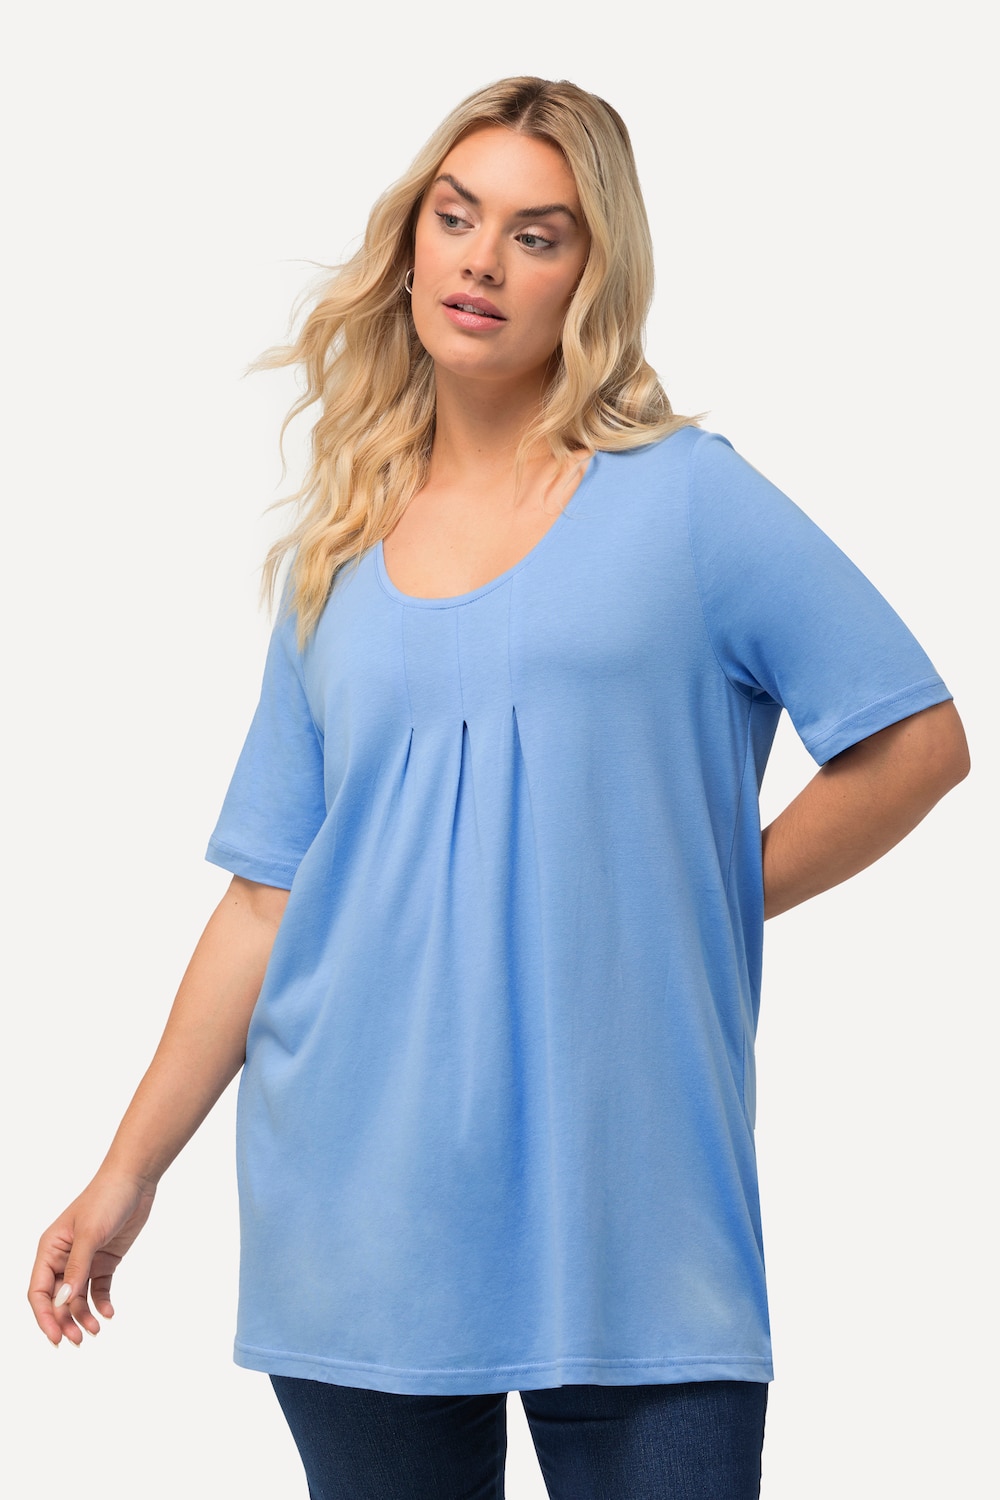 Grote Maten T-Shirt, Dames, blauw, Maat: 62/64, Katoen/Synthetische vezels, Ulla Popken